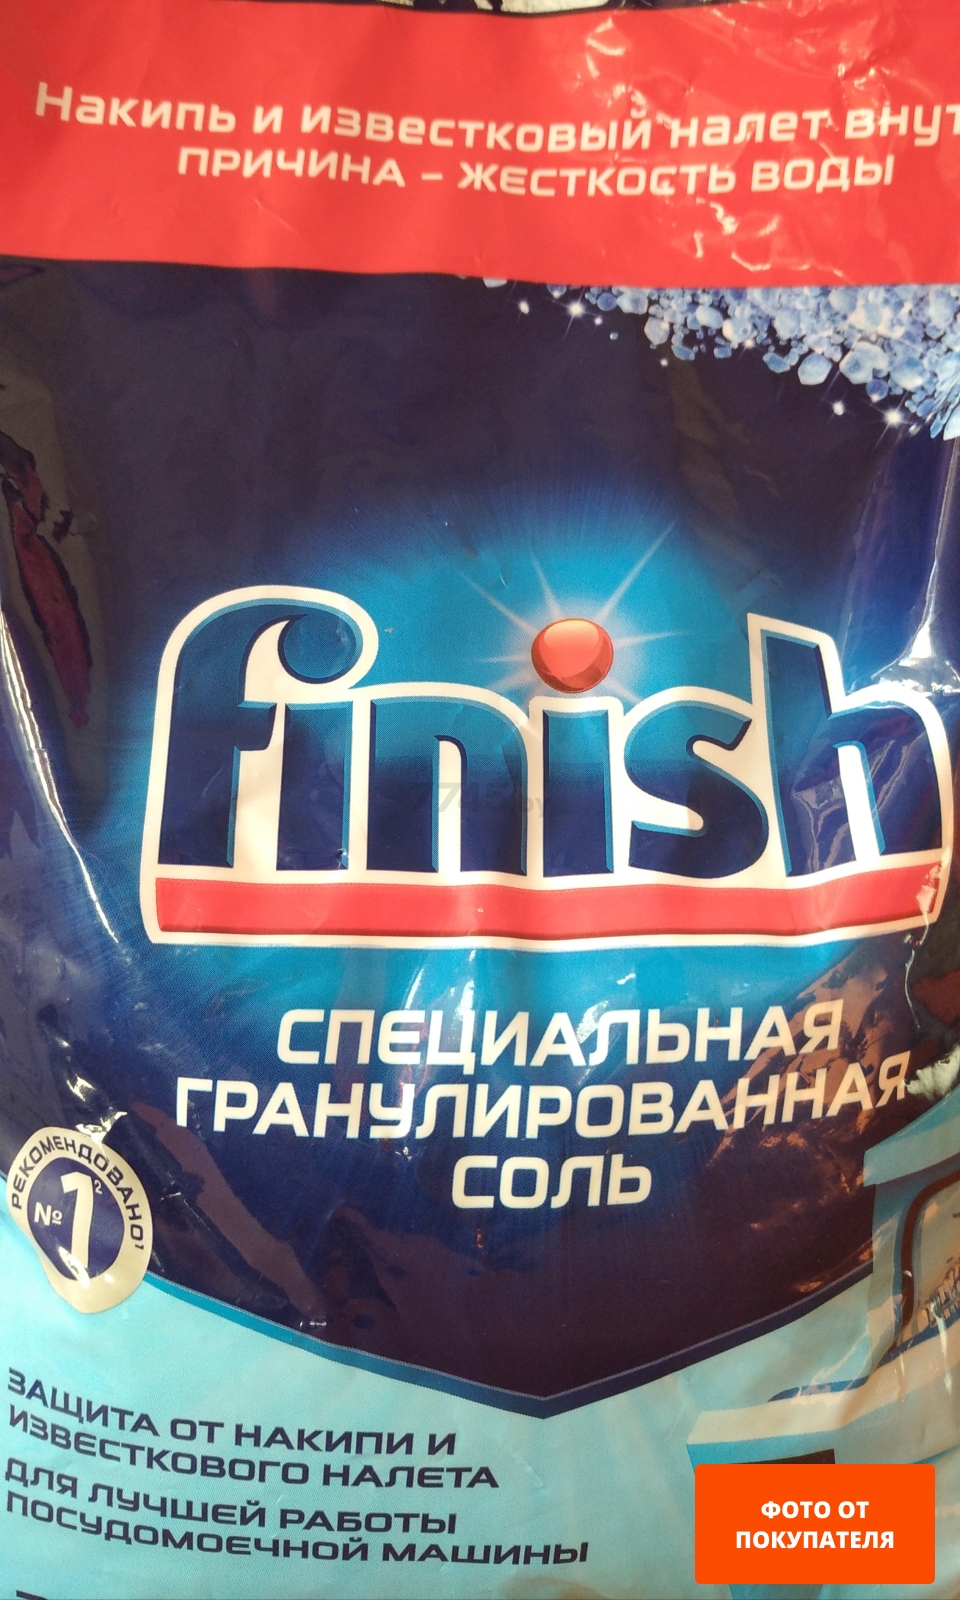 Соль для посудомоечных машин FINISH 3 кг (4640018991554)